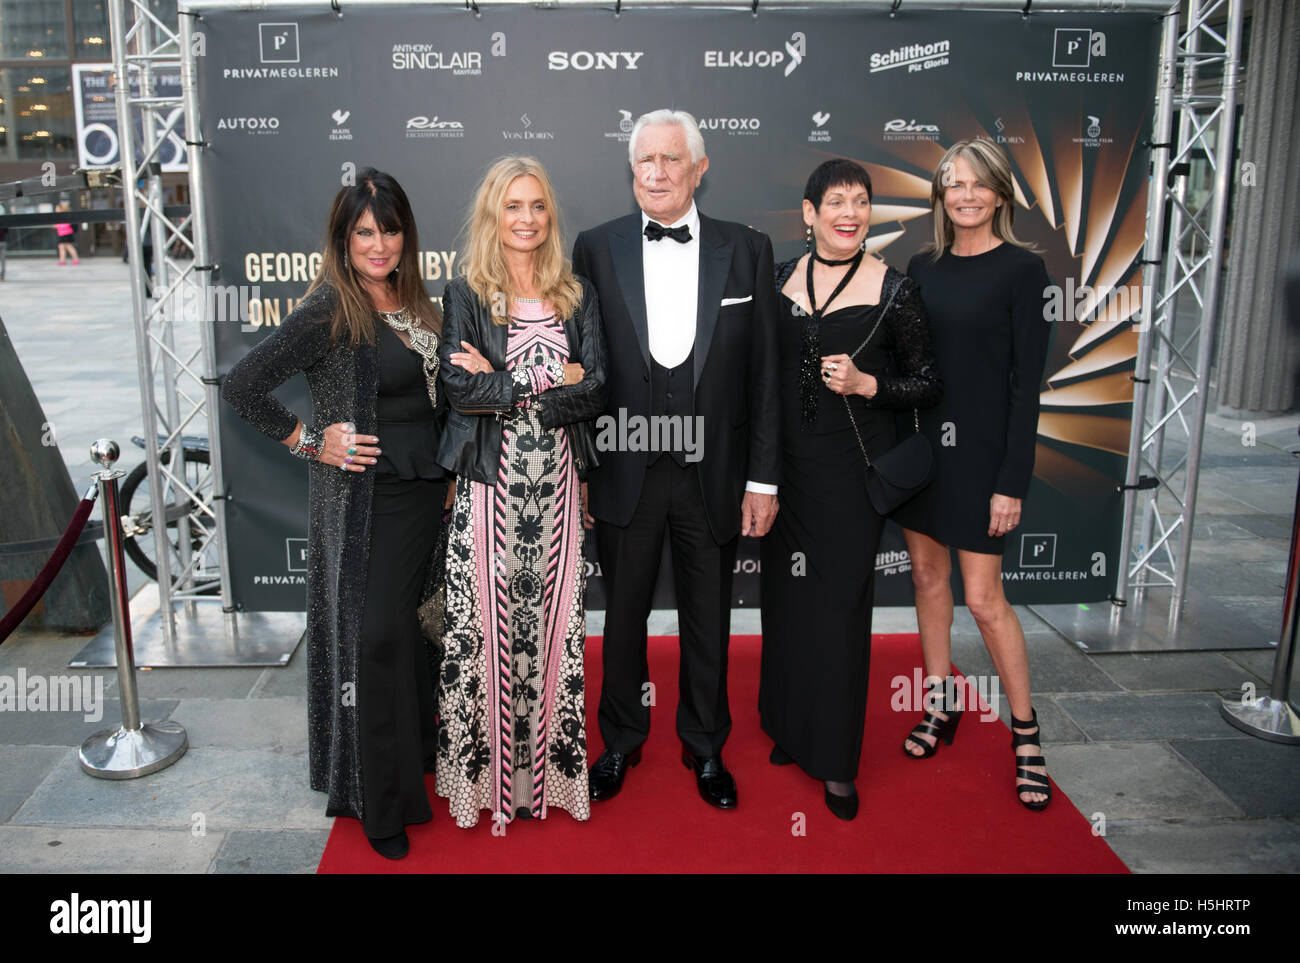 Acteur de James Bond australien George Lazenby et les quatre 'James Bond girls' à un premier ministre à Oslo. Banque D'Images